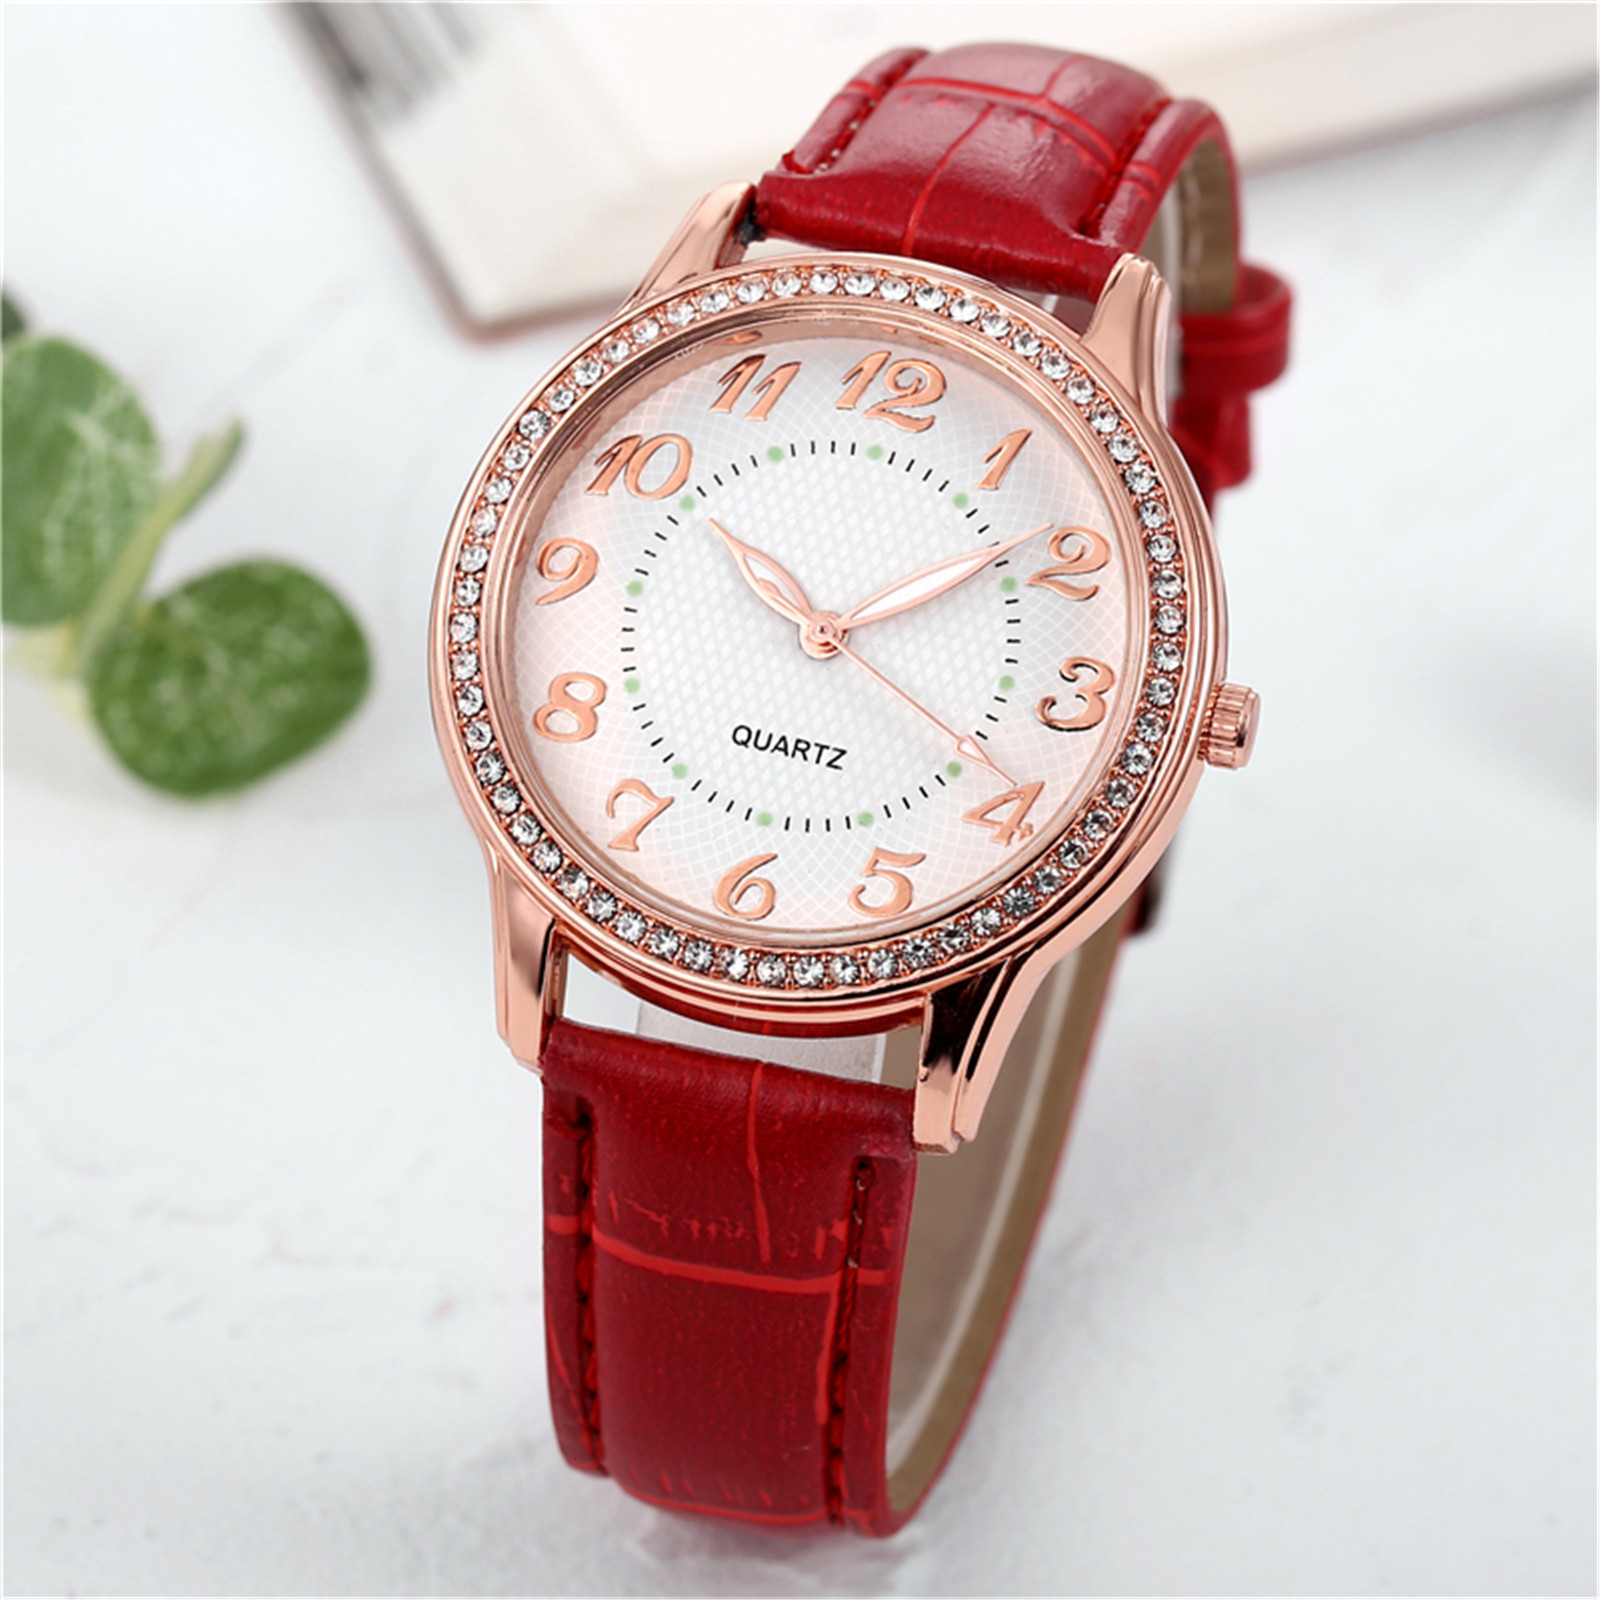 amousa Watch Ladies Diamond Luxury Watch Fashion Belt Watch - image 1 of 3